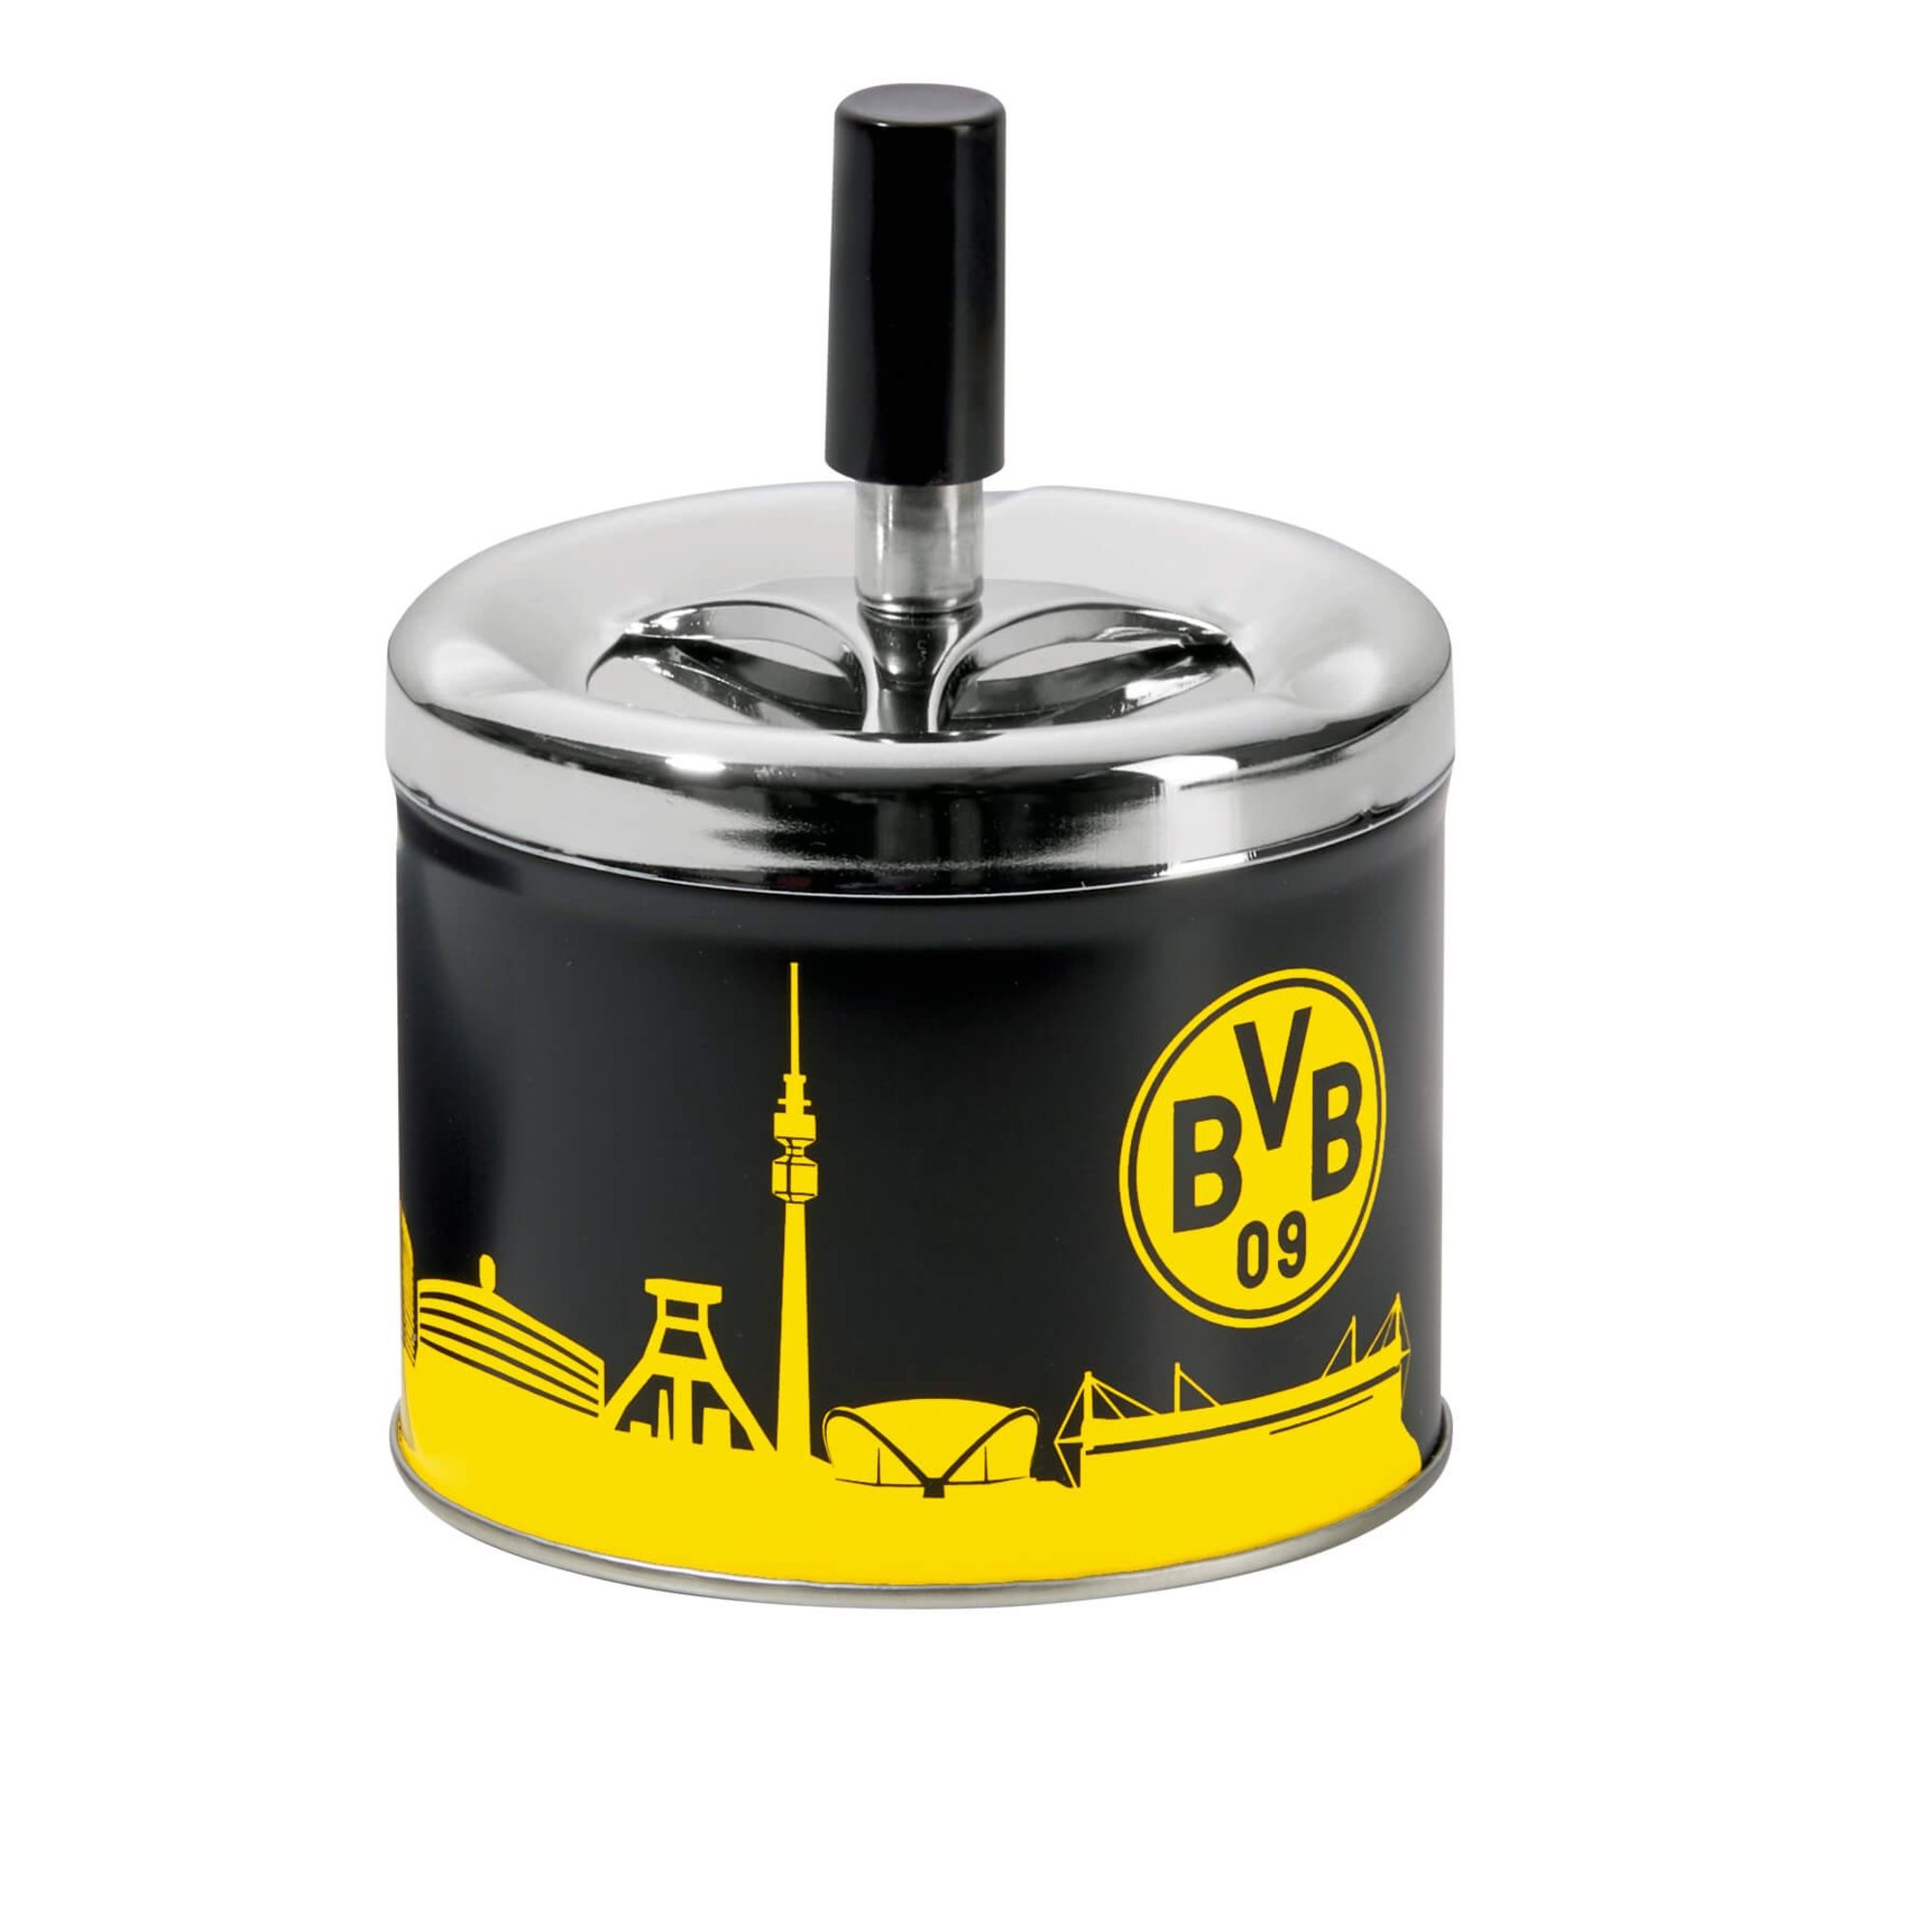 Borussia Dortmund - BVB Aschenbecher mit Deckel, Metall' kaufen